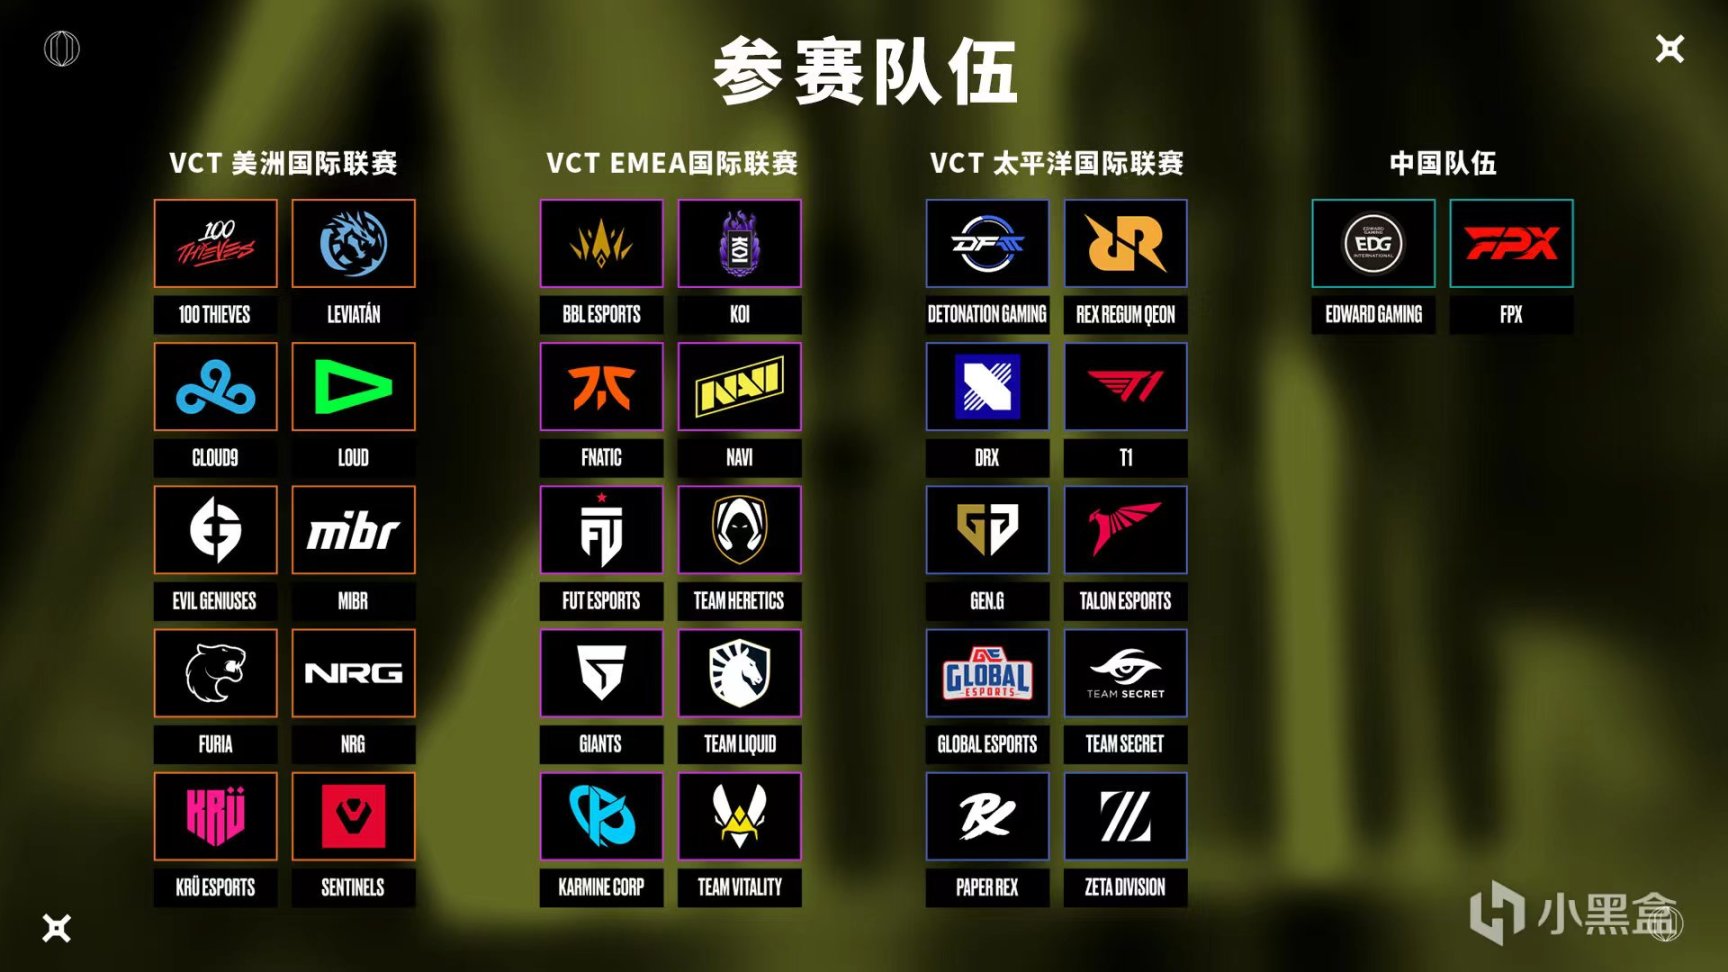 【VALORANT】中国战队EDG与FPX受邀参加季前邀请赛-第0张